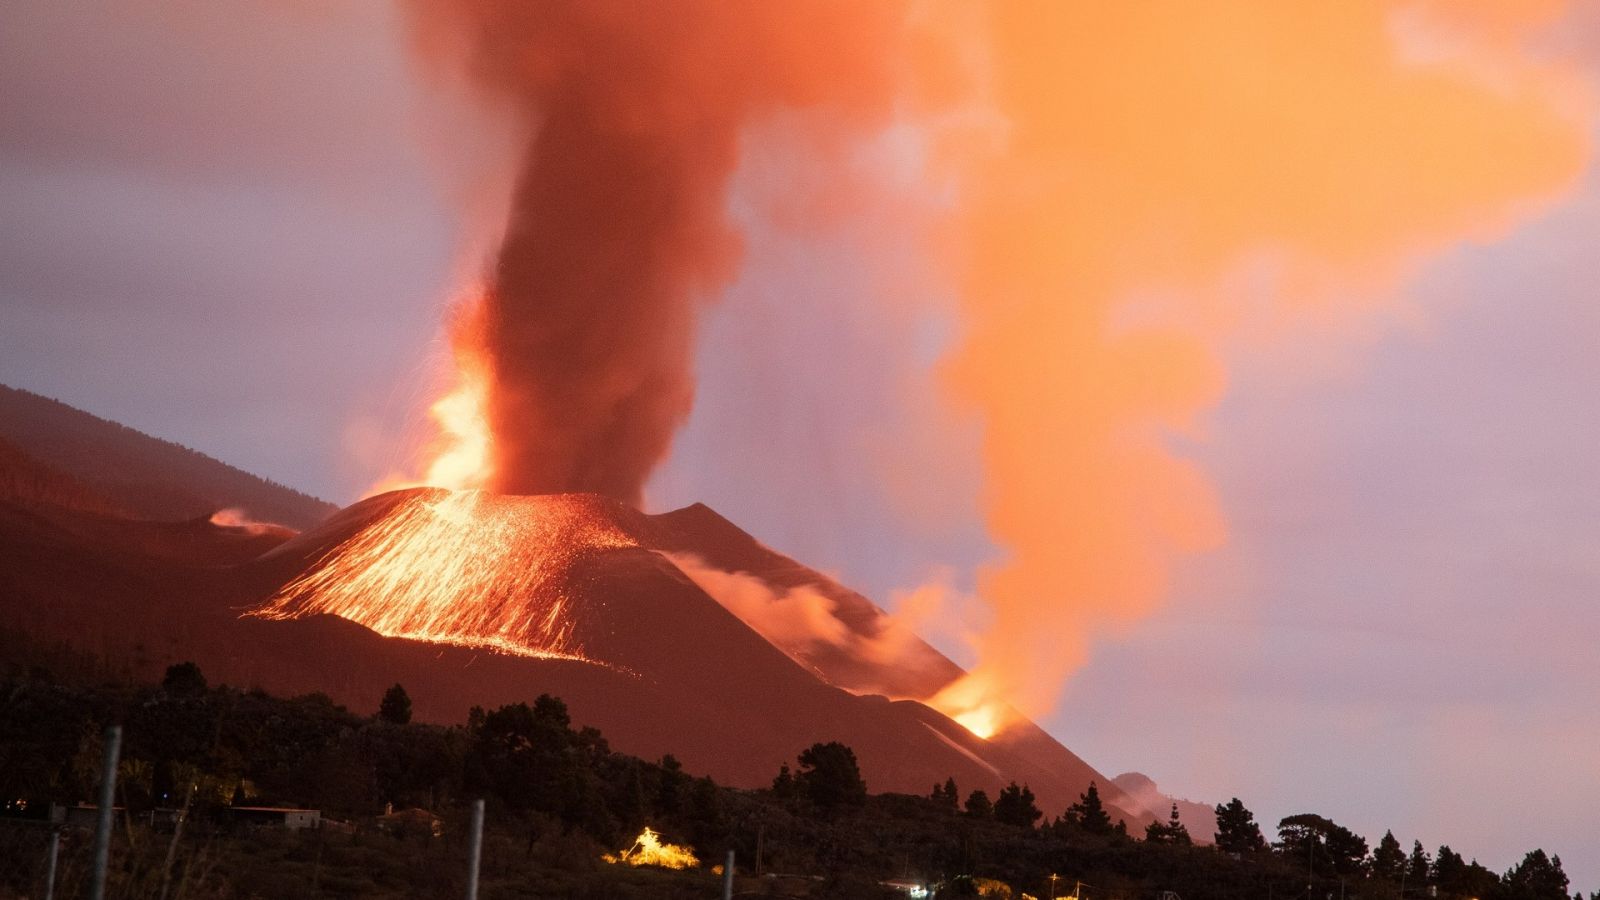 Los vulcanólogos del IGN, sobre el fin de la erupción: "Hay que tener paciencia y cautela"